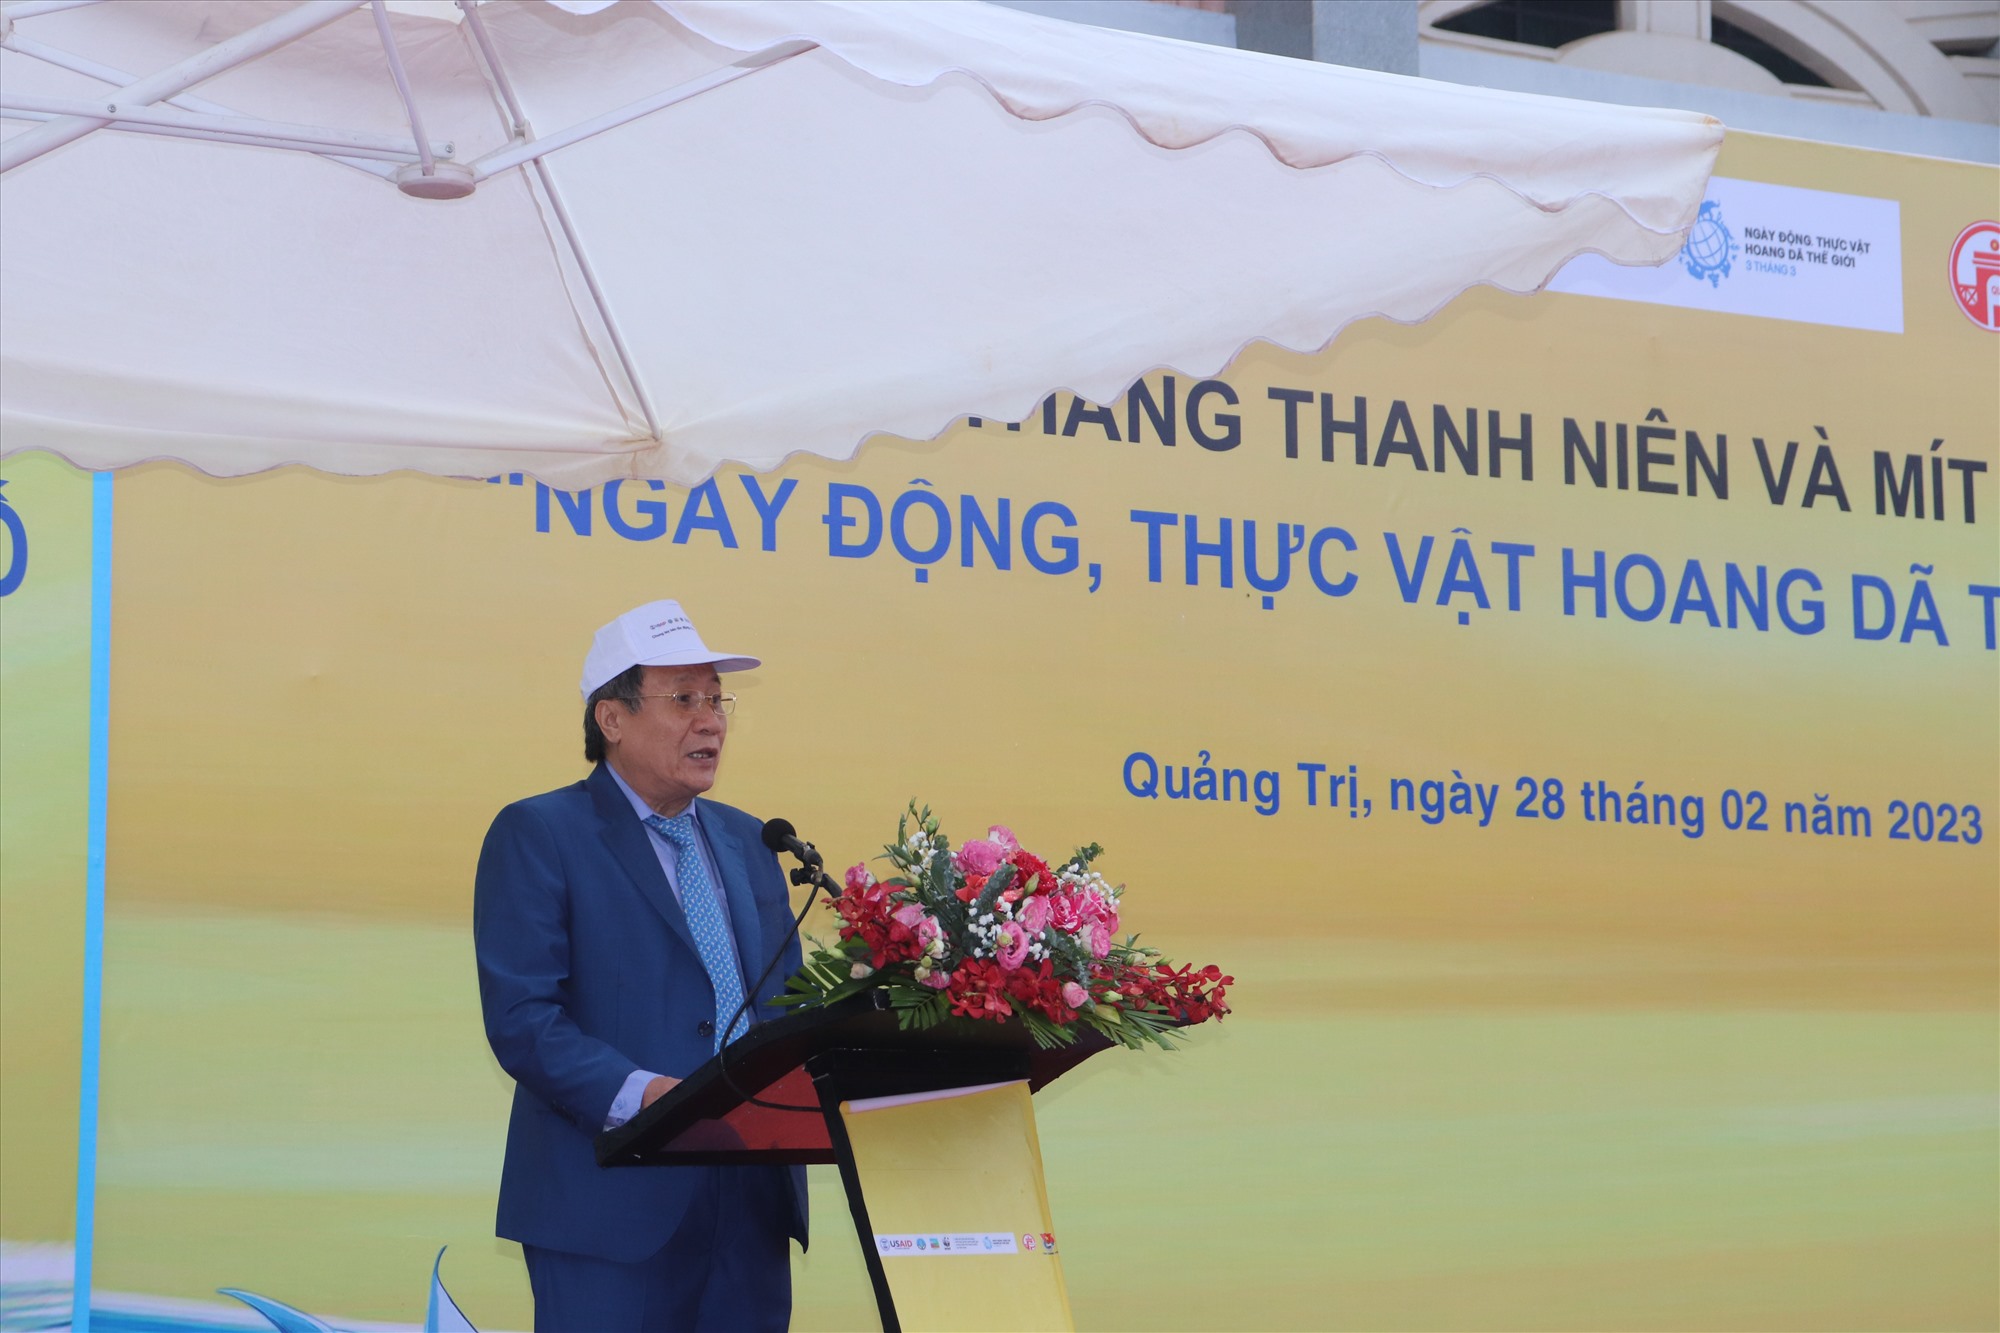 Phó Chủ tịch Thường trực UBND tỉnh Hà Sỹ Đồng phát biểu tại buổi lễ - Ảnh: T.P